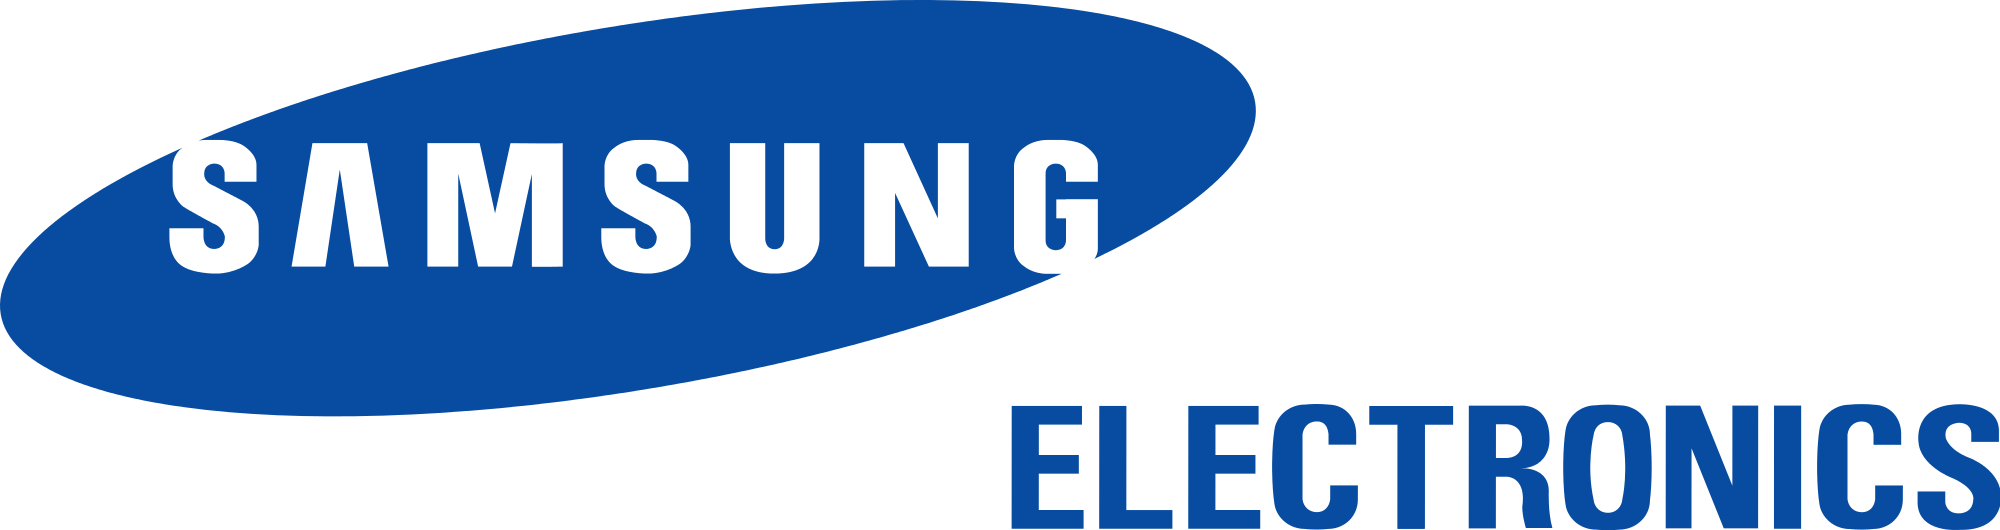 Bạn yêu thích logo Samsung với hình ảnh chữ S trang trọng và đẳng cấp? Hãy xem ảnh Samsung logo PNG để phục vụ cho nhu cầu trang trí và làm đẹp.